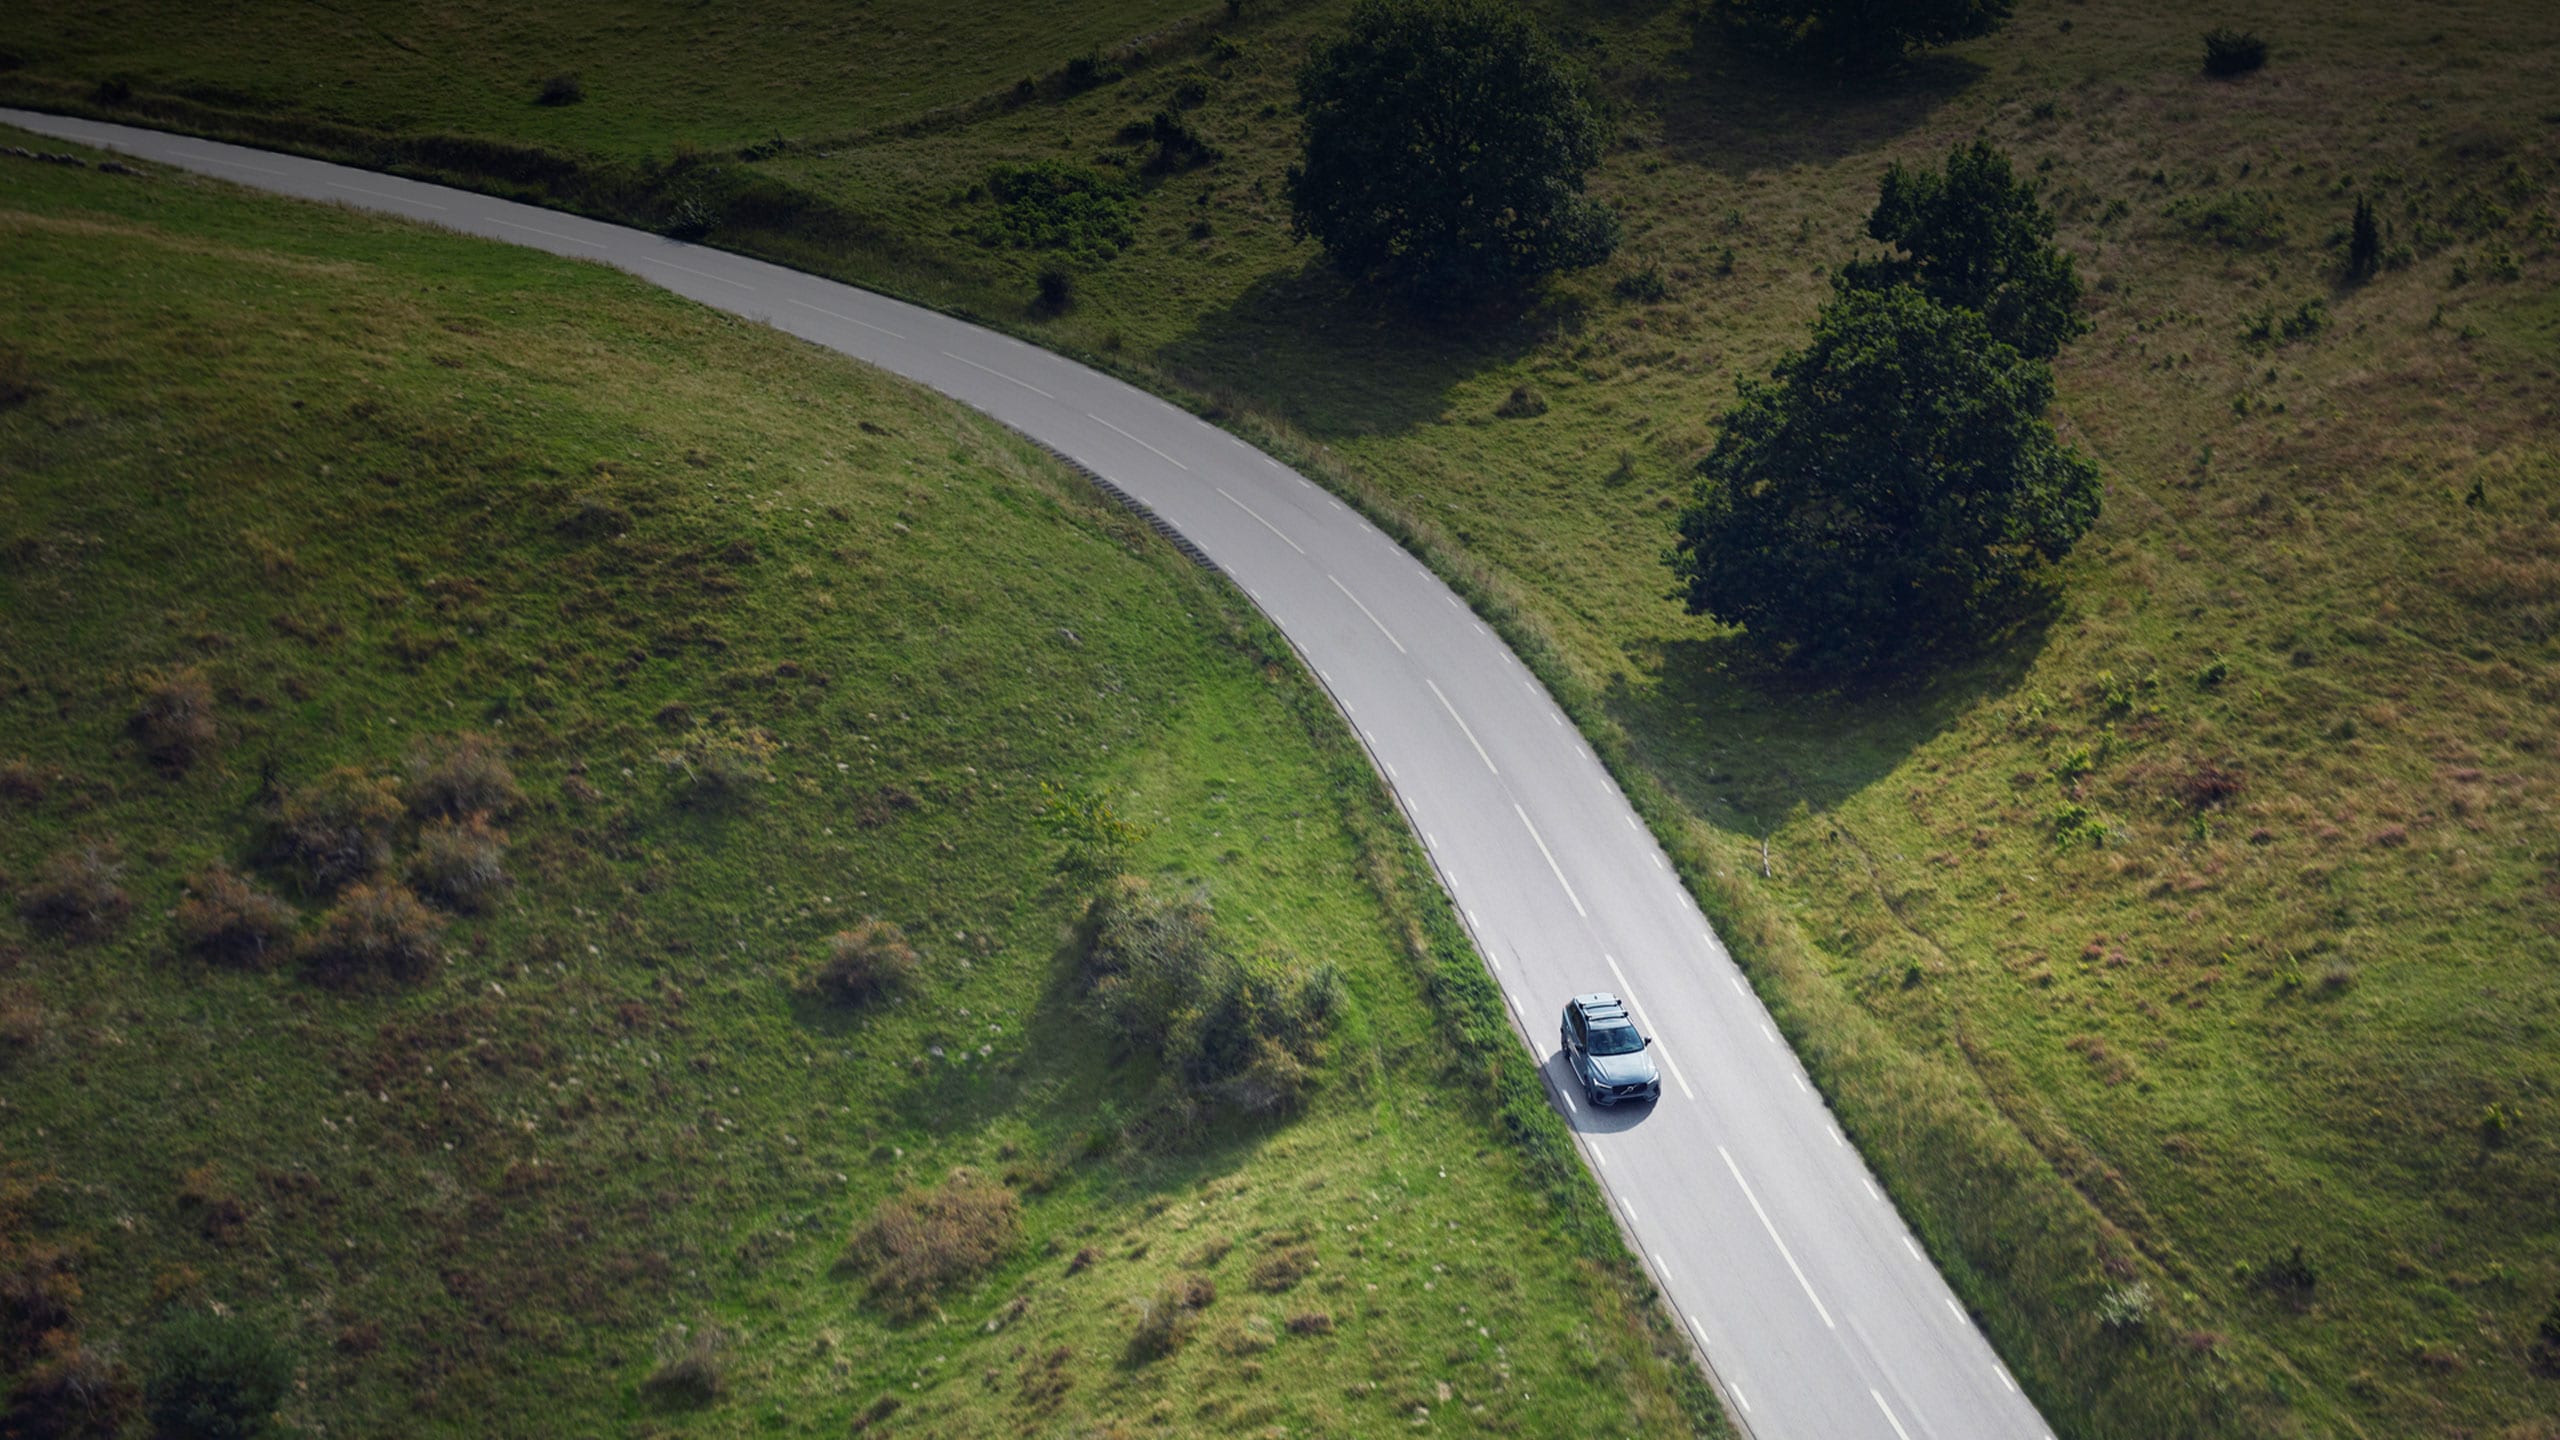 Volvo XC60 descendiendo una colina con prados verdes a los costados